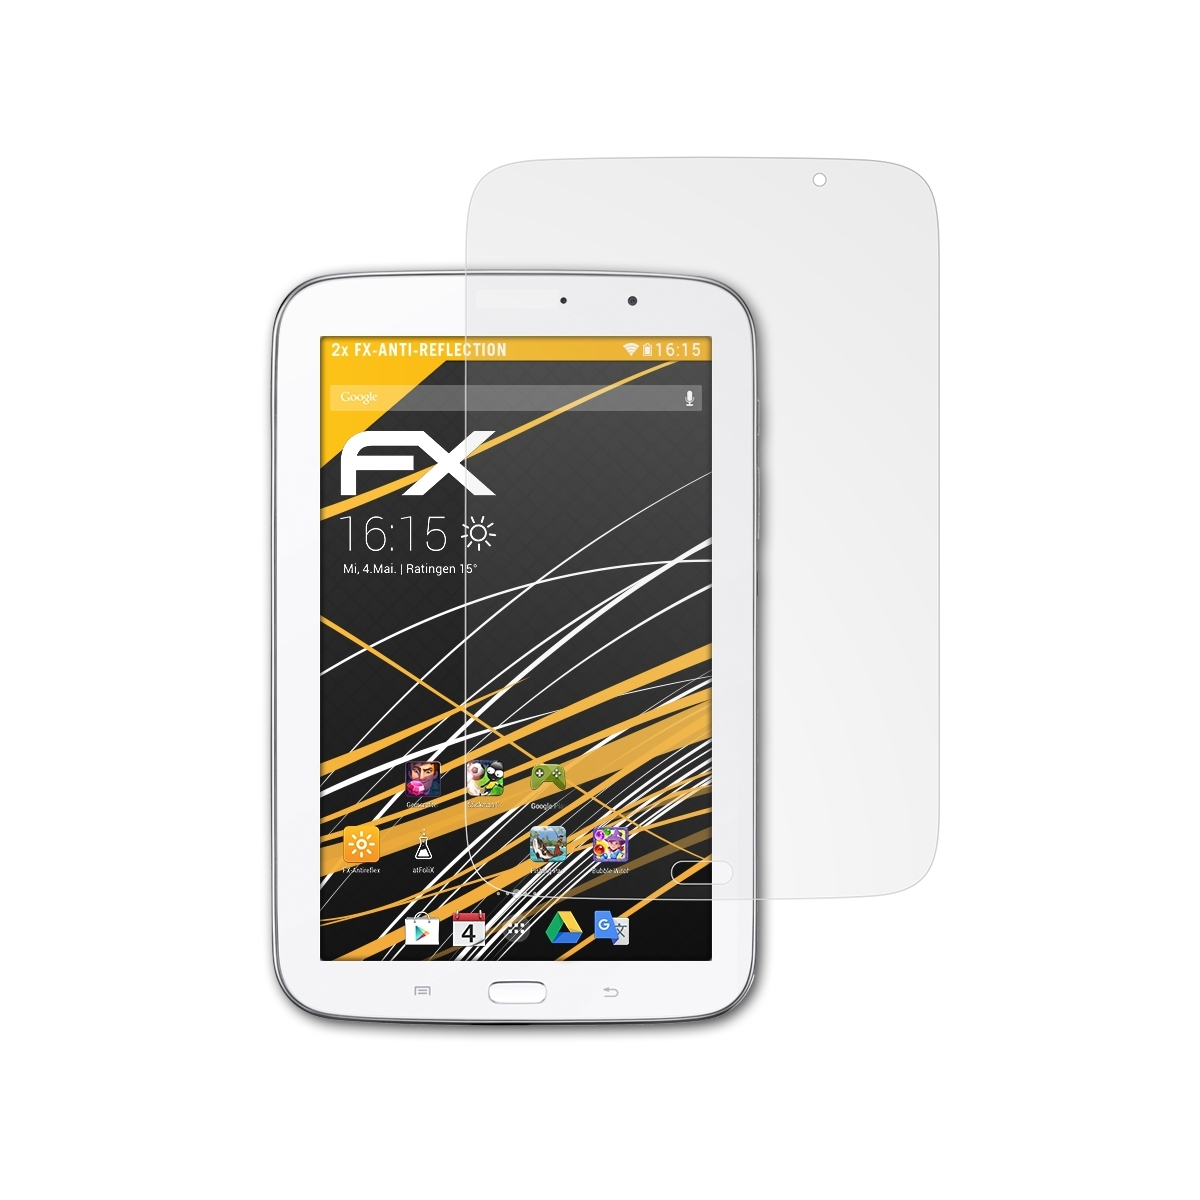 ATFOLIX 2x Samsung FX-Antireflex 8.0 Galaxy Displayschutz(für Note (GT-N5110))